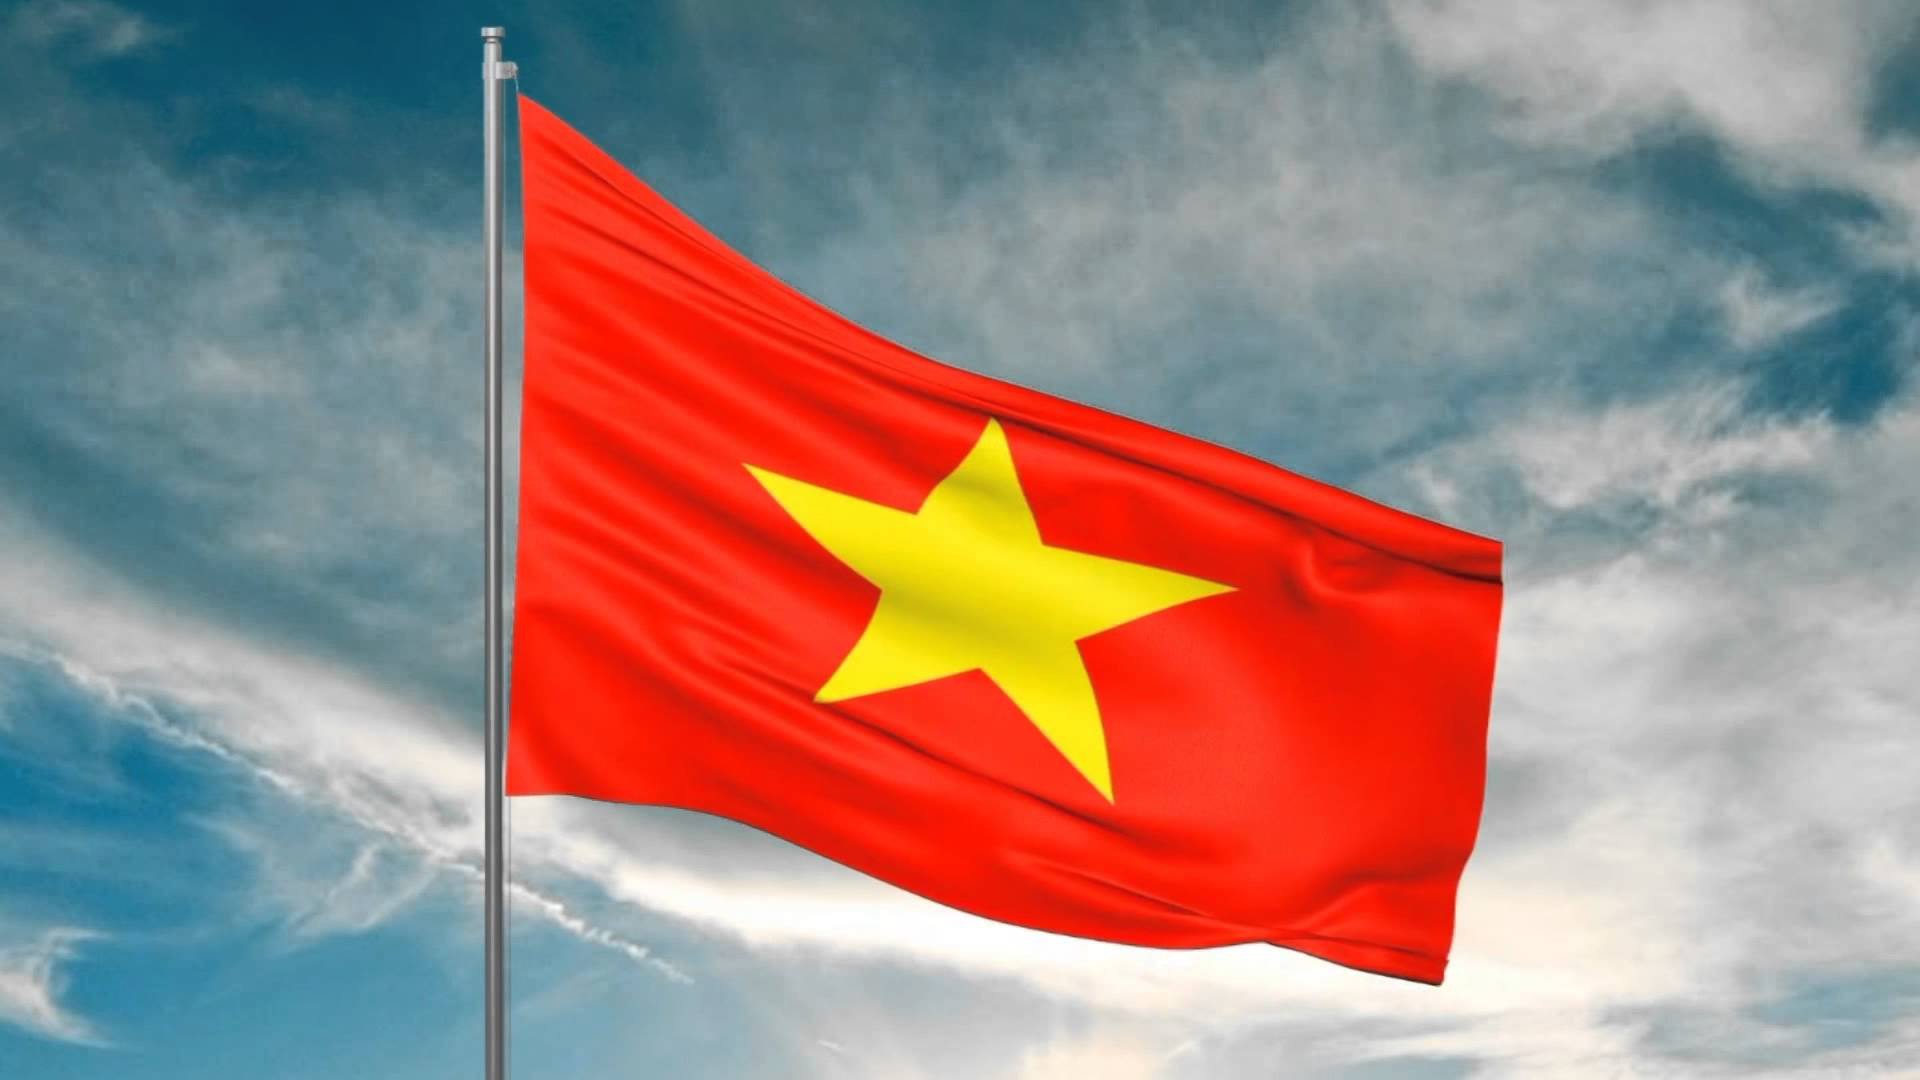 Tả lá cờ Tổ quốc trên bầu trời xanh rực rỡ mang nhiều ý nghĩa lịch sử và tinh thần yêu nước. Đây là biểu tượng của sự đoàn kết và tình yêu quê hương. Hãy xem hình ảnh liên quan để cùng chia sẻ tình yêu đối với đất nước Việt Nam.